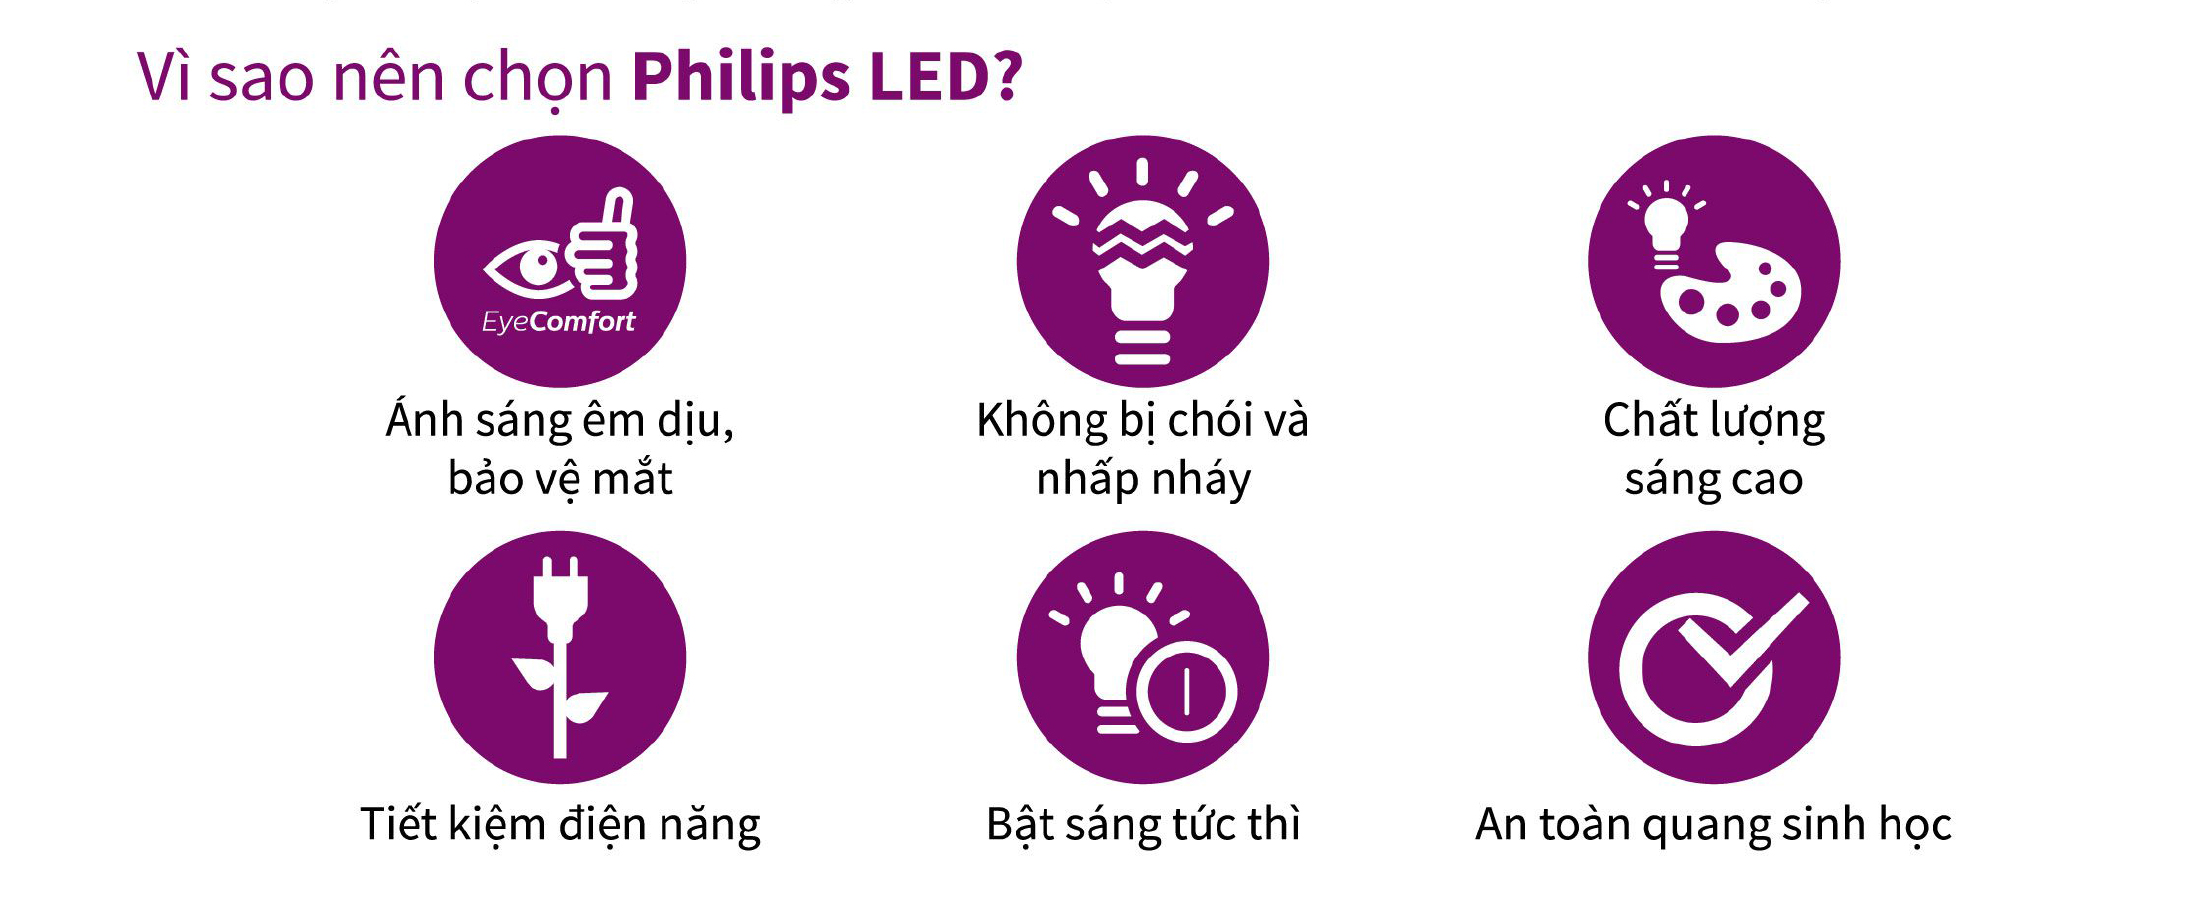 Vì sao nên chọn đèn Philips